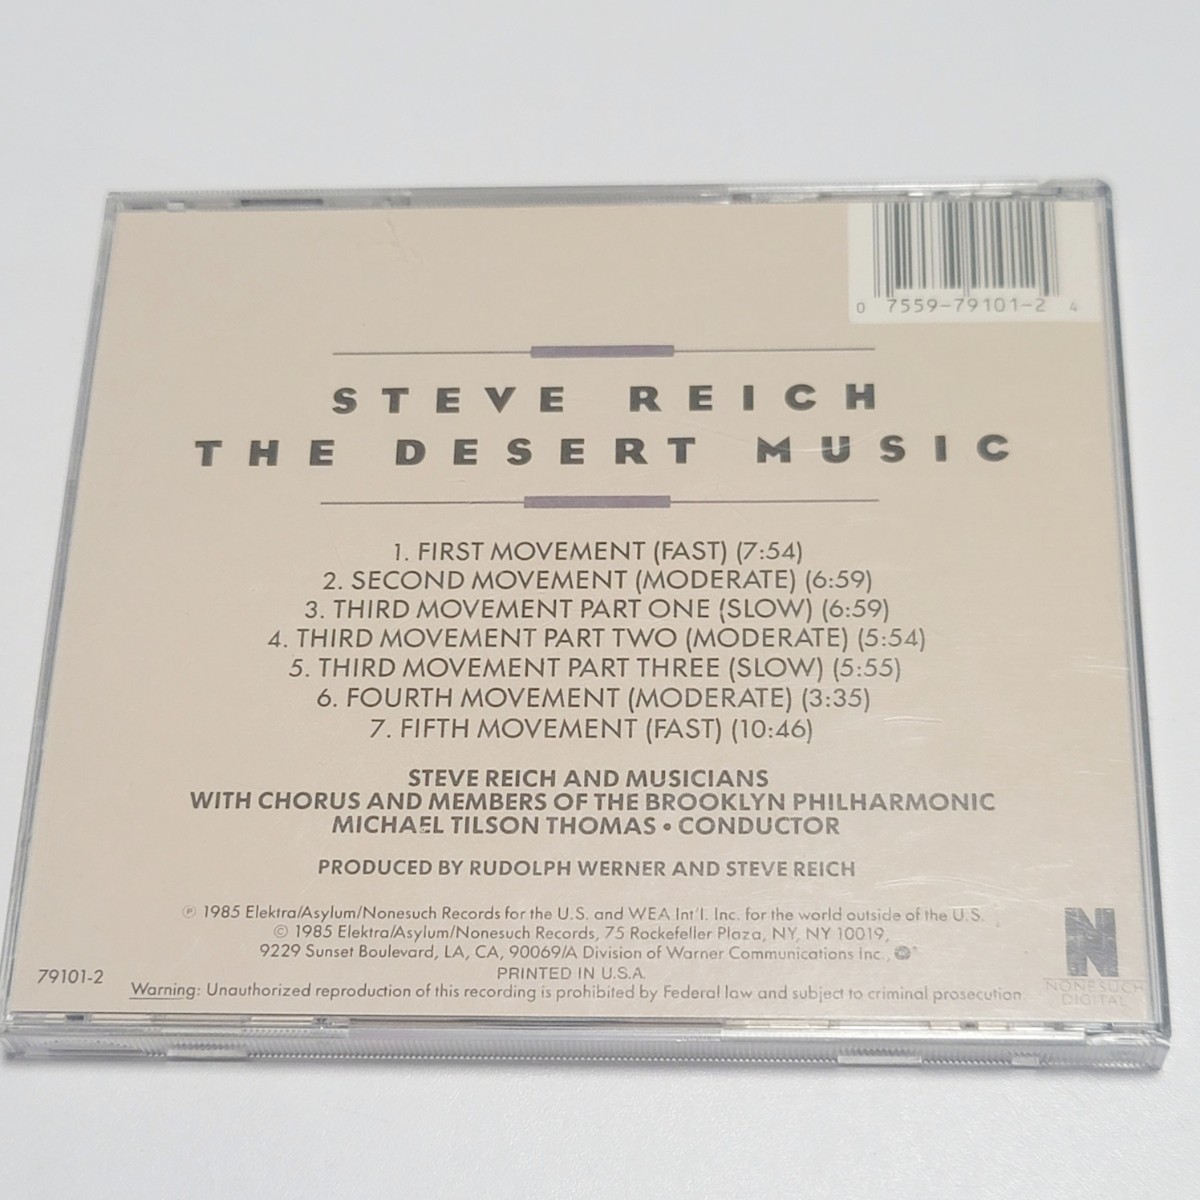 《日本語解説書つき》CD US盤 スティーヴ・ライヒ「砂漠の音楽」STEVE REICH / THE DESERT MUSIC 指揮:マイケル・ティルソン・トーマス _画像3